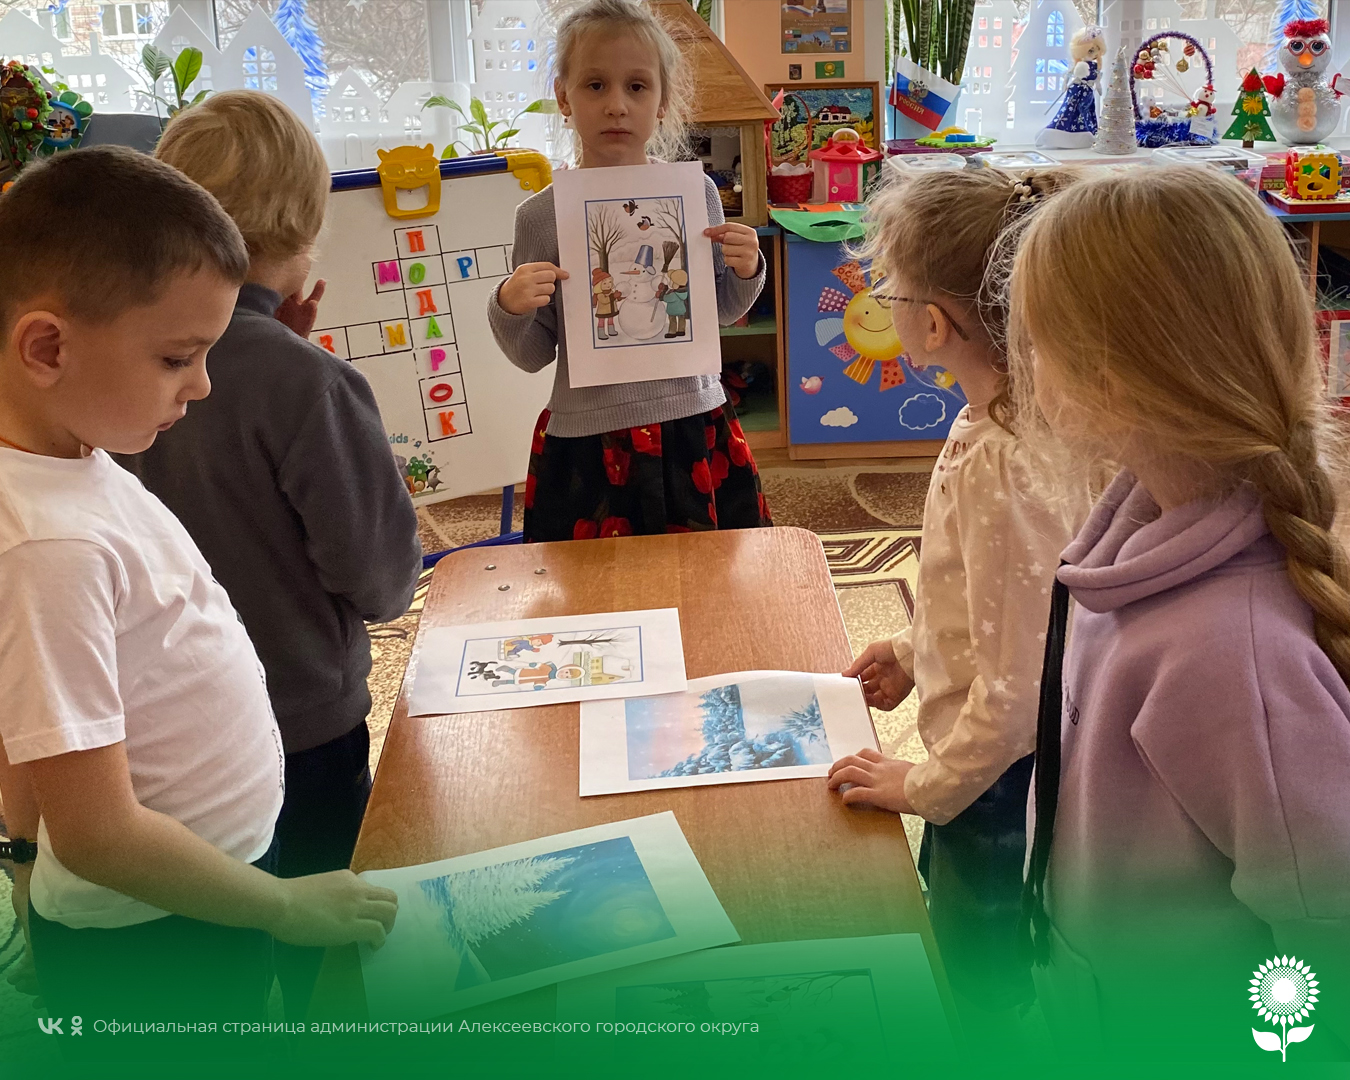 В детских садах Алексеевского городского округа отметили День Рождения кроссворда